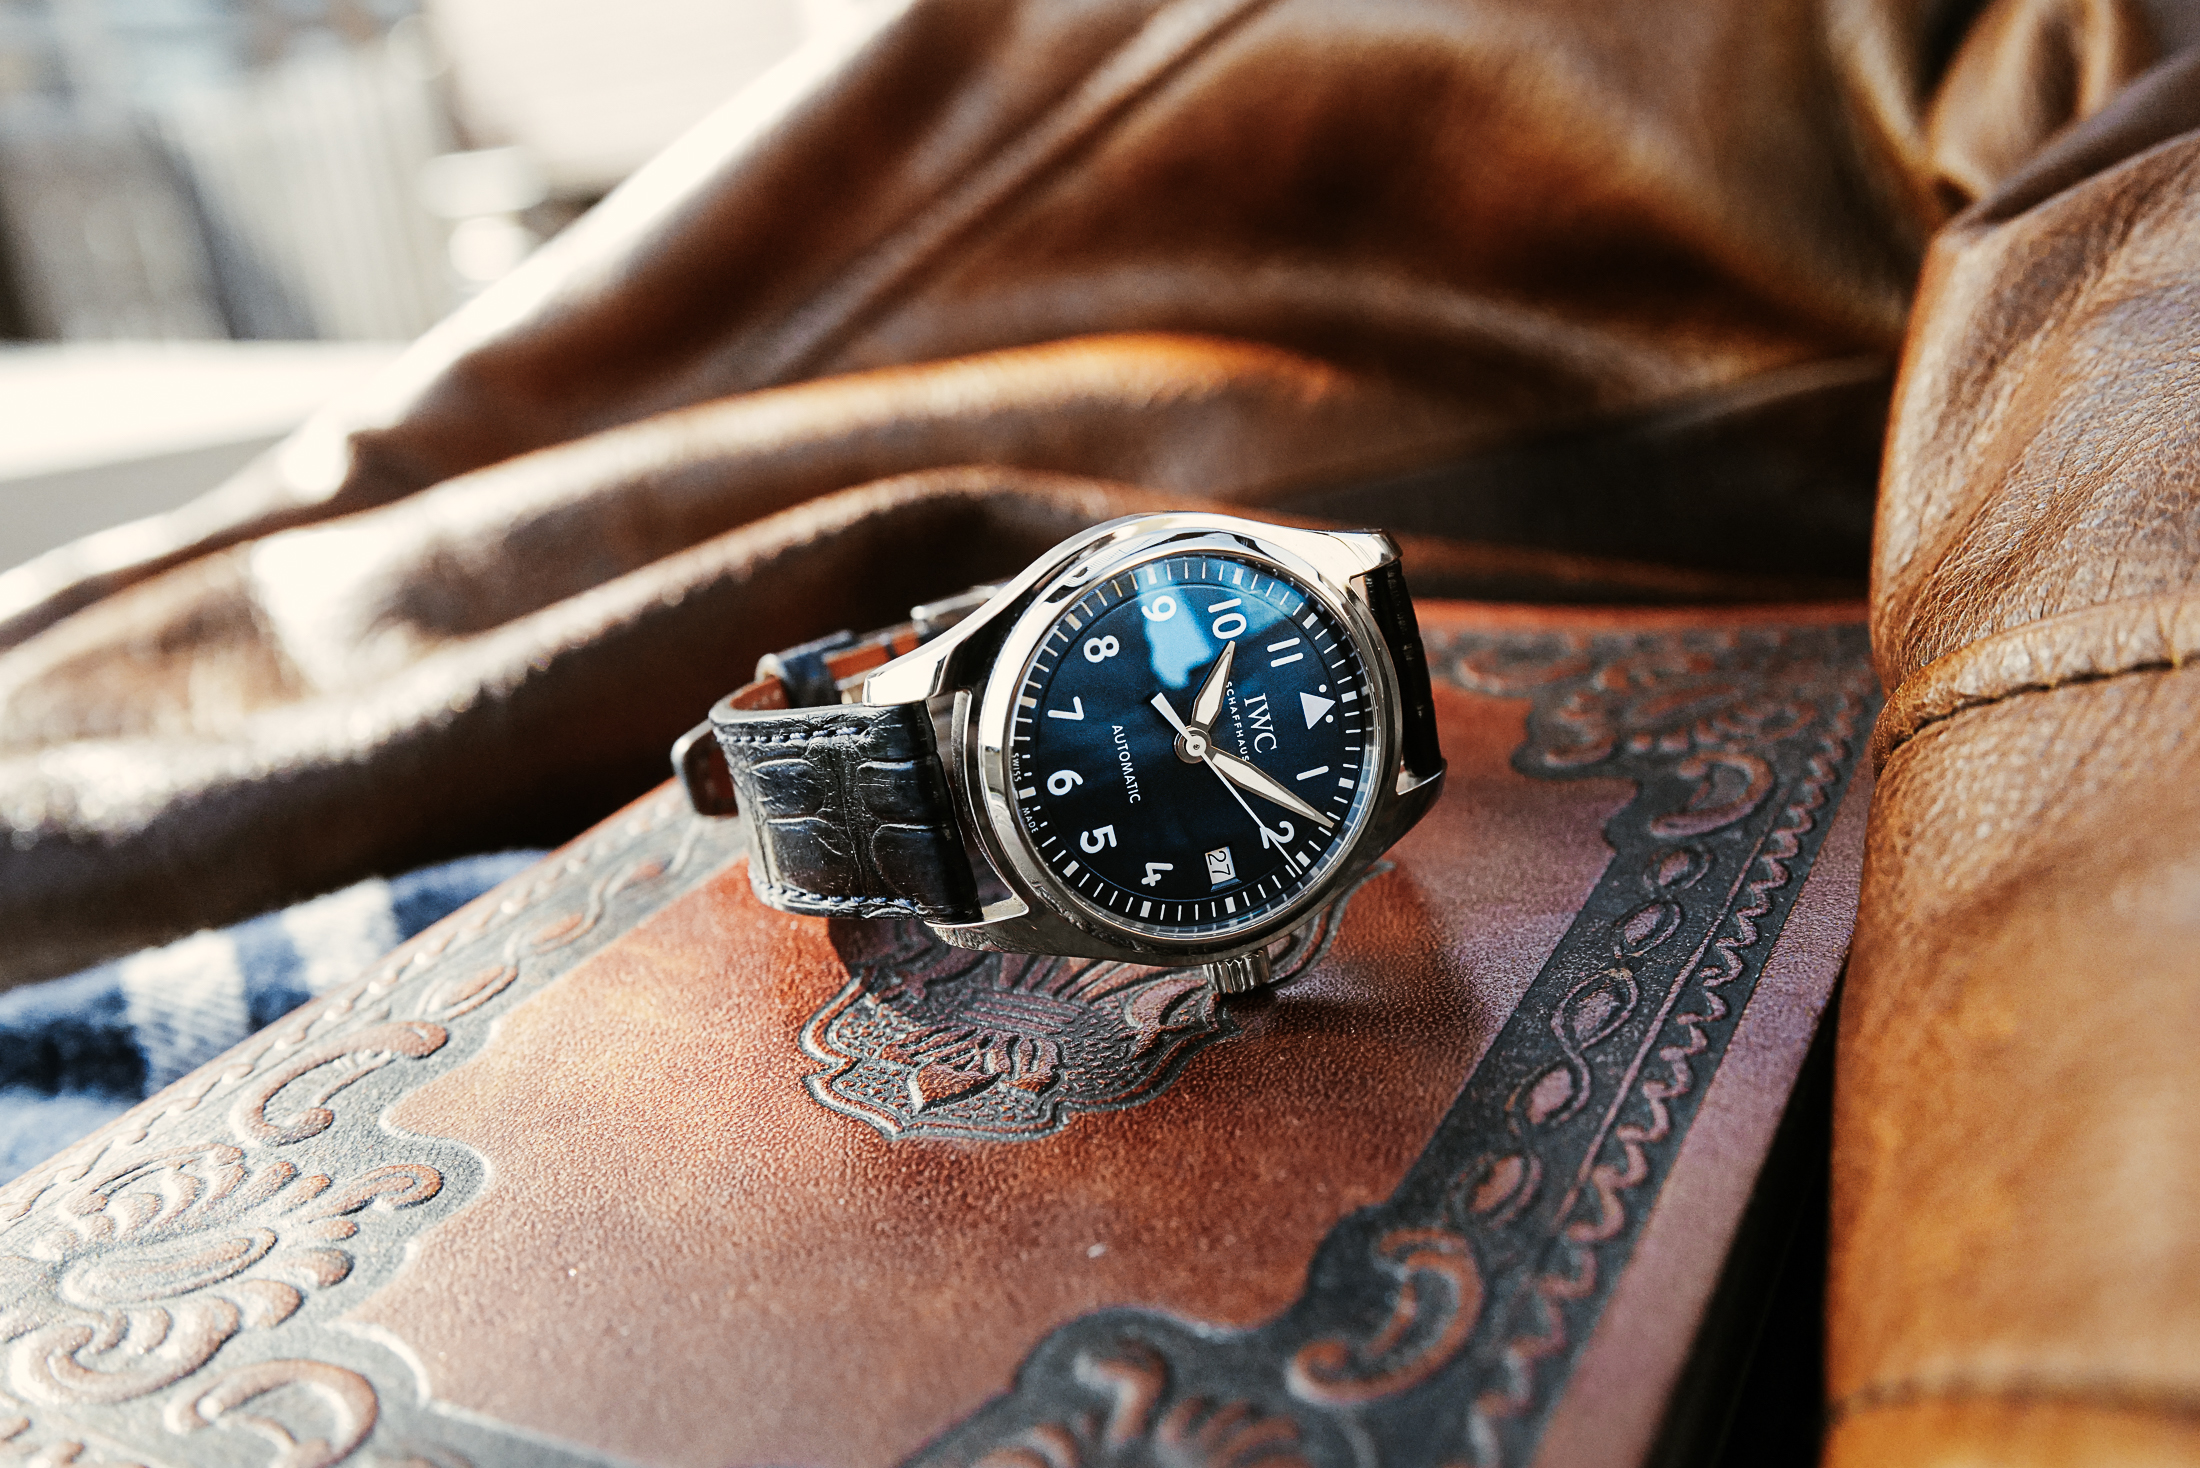 ロシア海軍 ダイバー時計 モルニア3602 手巻き 新品未使用 - 腕時計(アナログ)